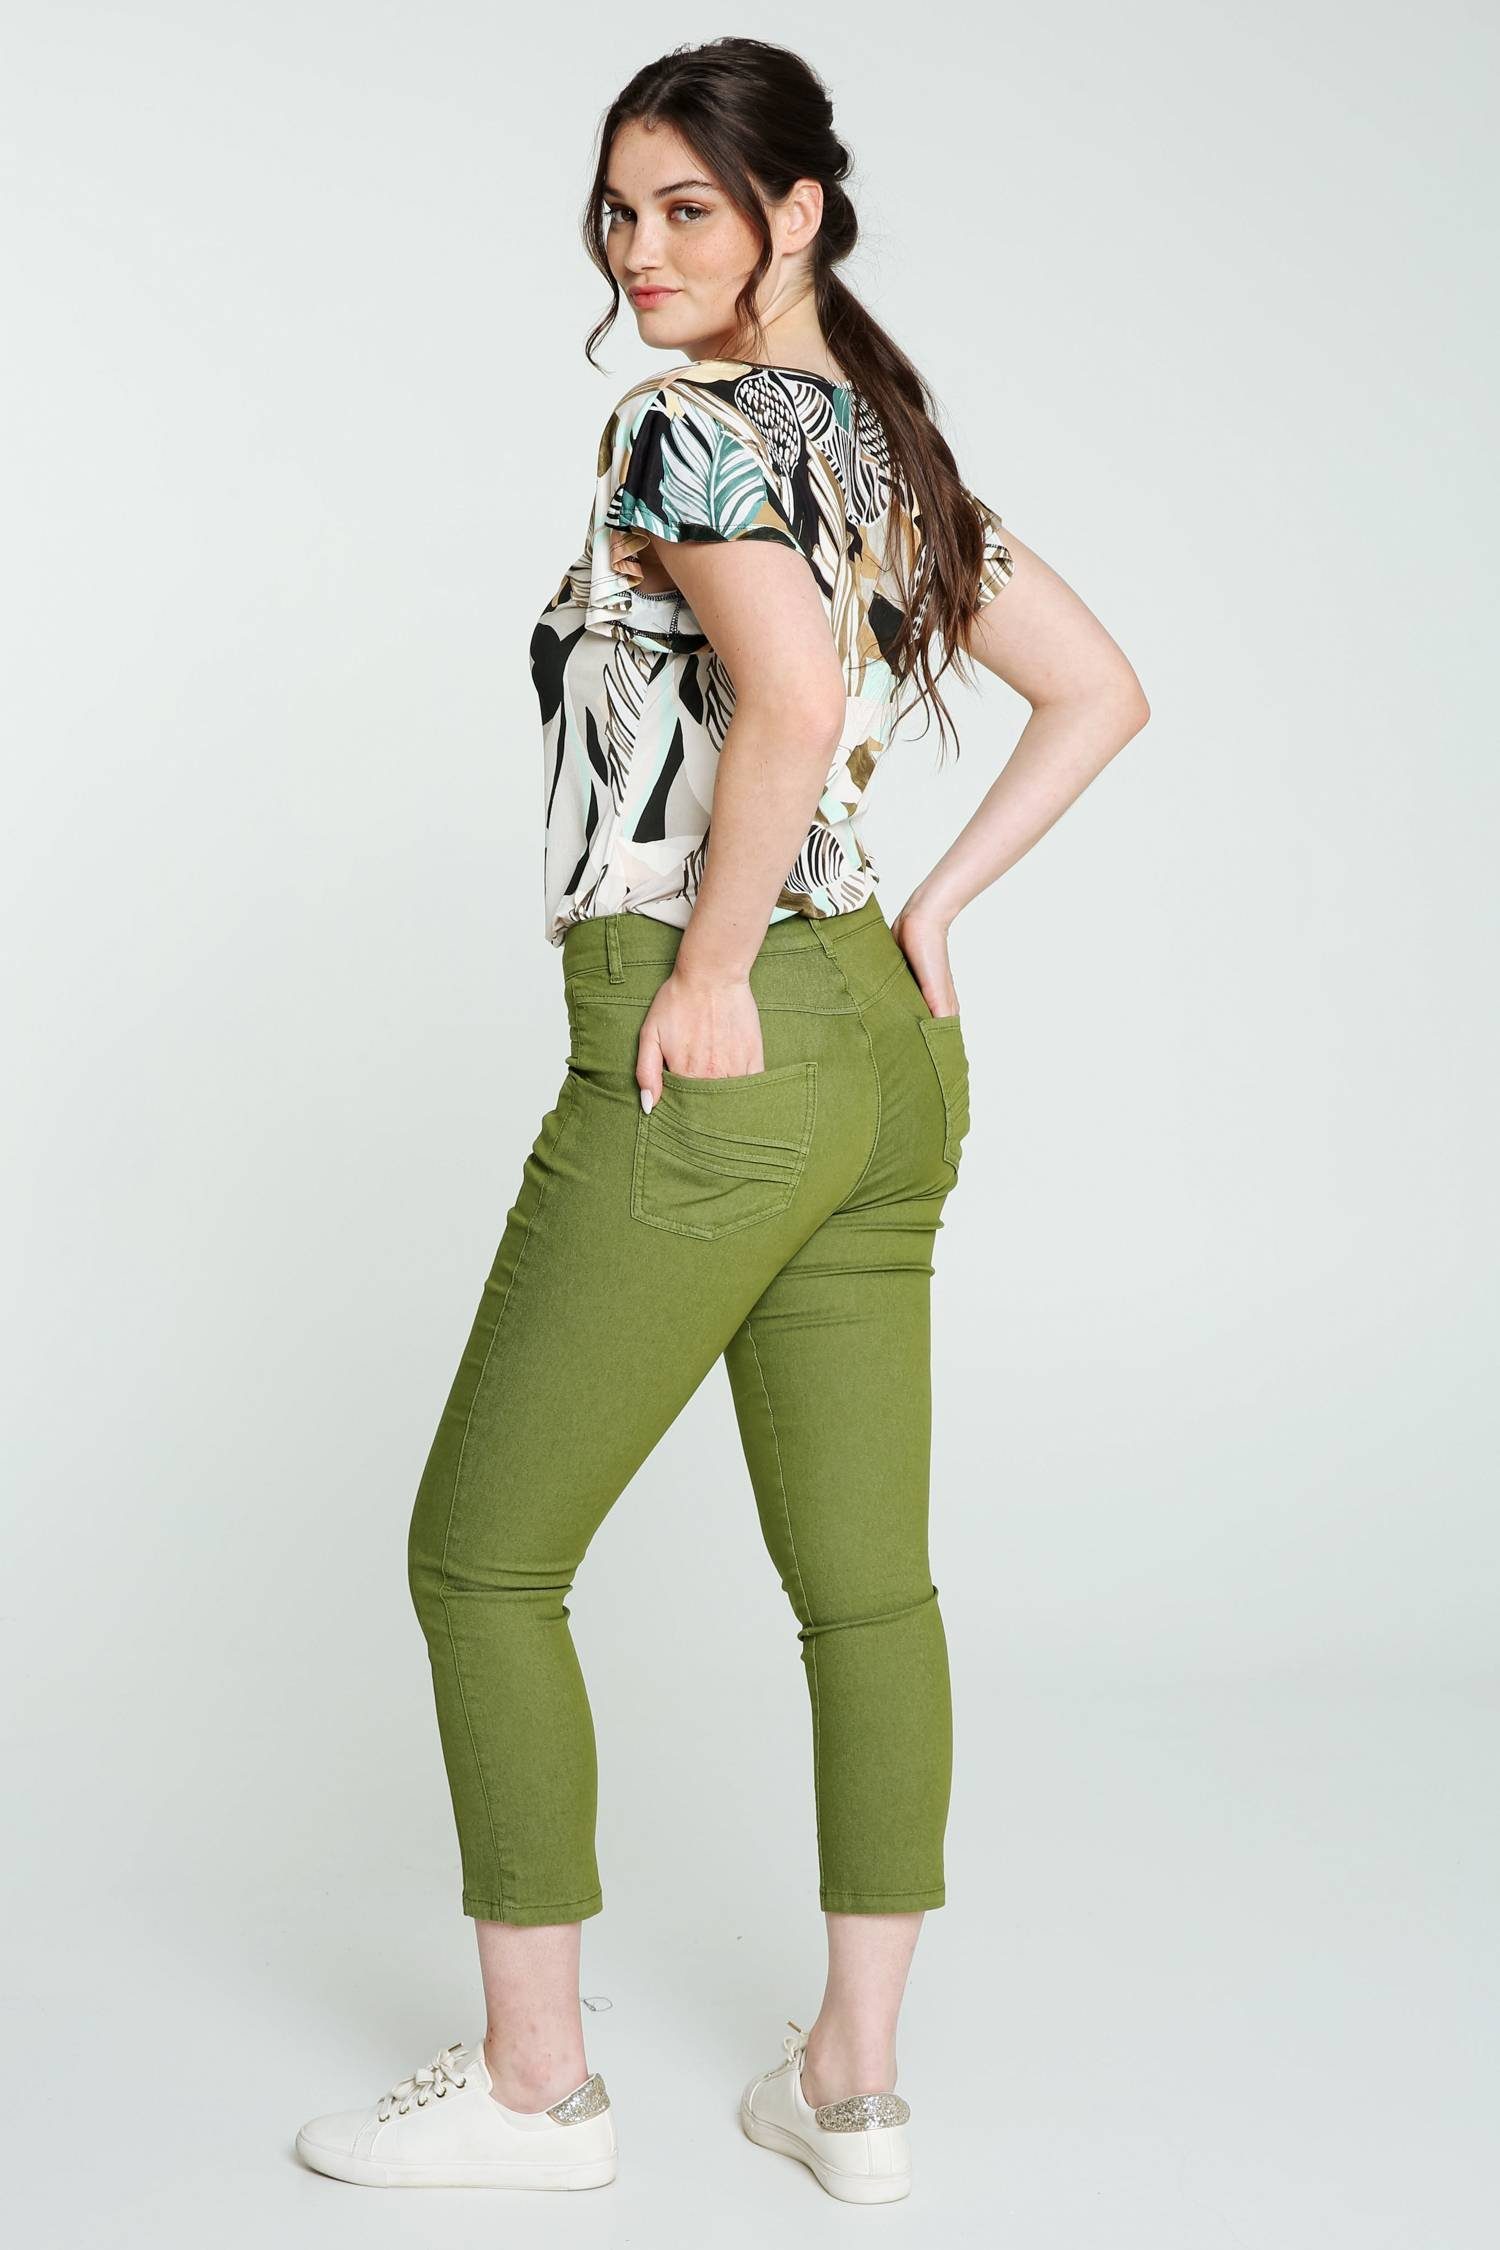 Faltendetail 5-Pocket-Jeans Slim-Fit-7/8-Jeans 5 Und Mit Taschen Cassis